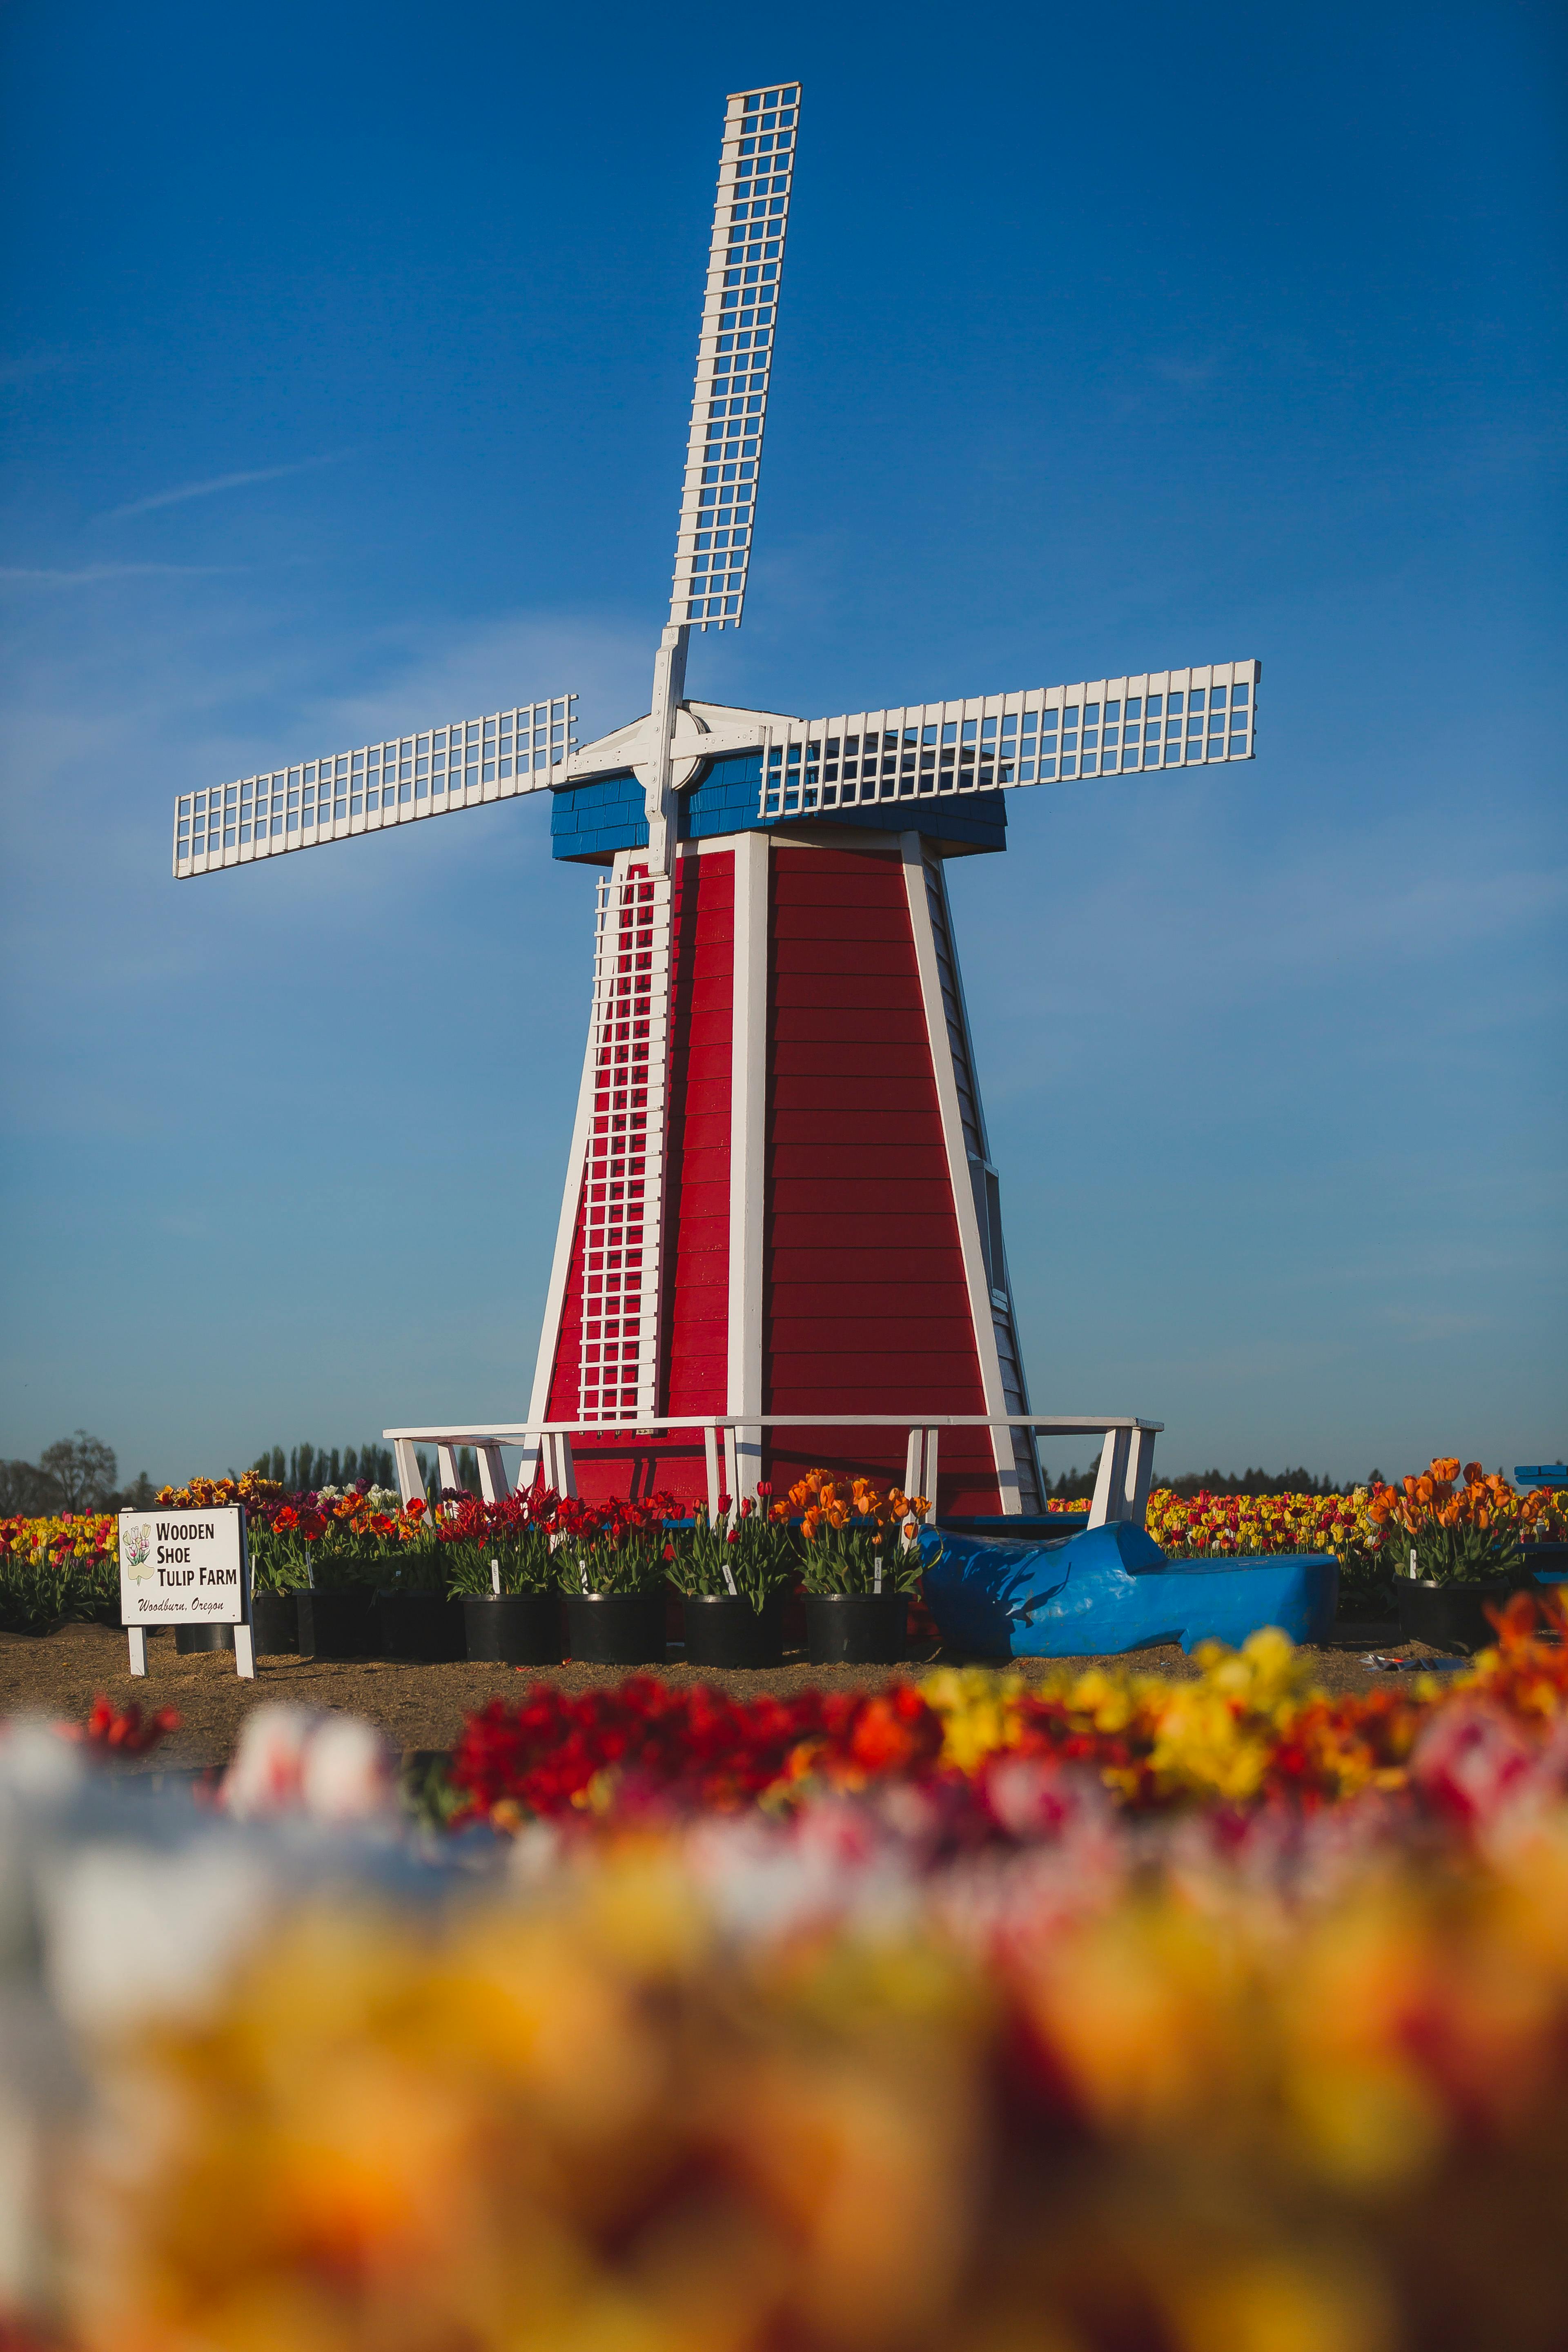 Đến Hà Lan chiêm ngưỡng những cánh đồng cối xay gió tuyệt đẹp